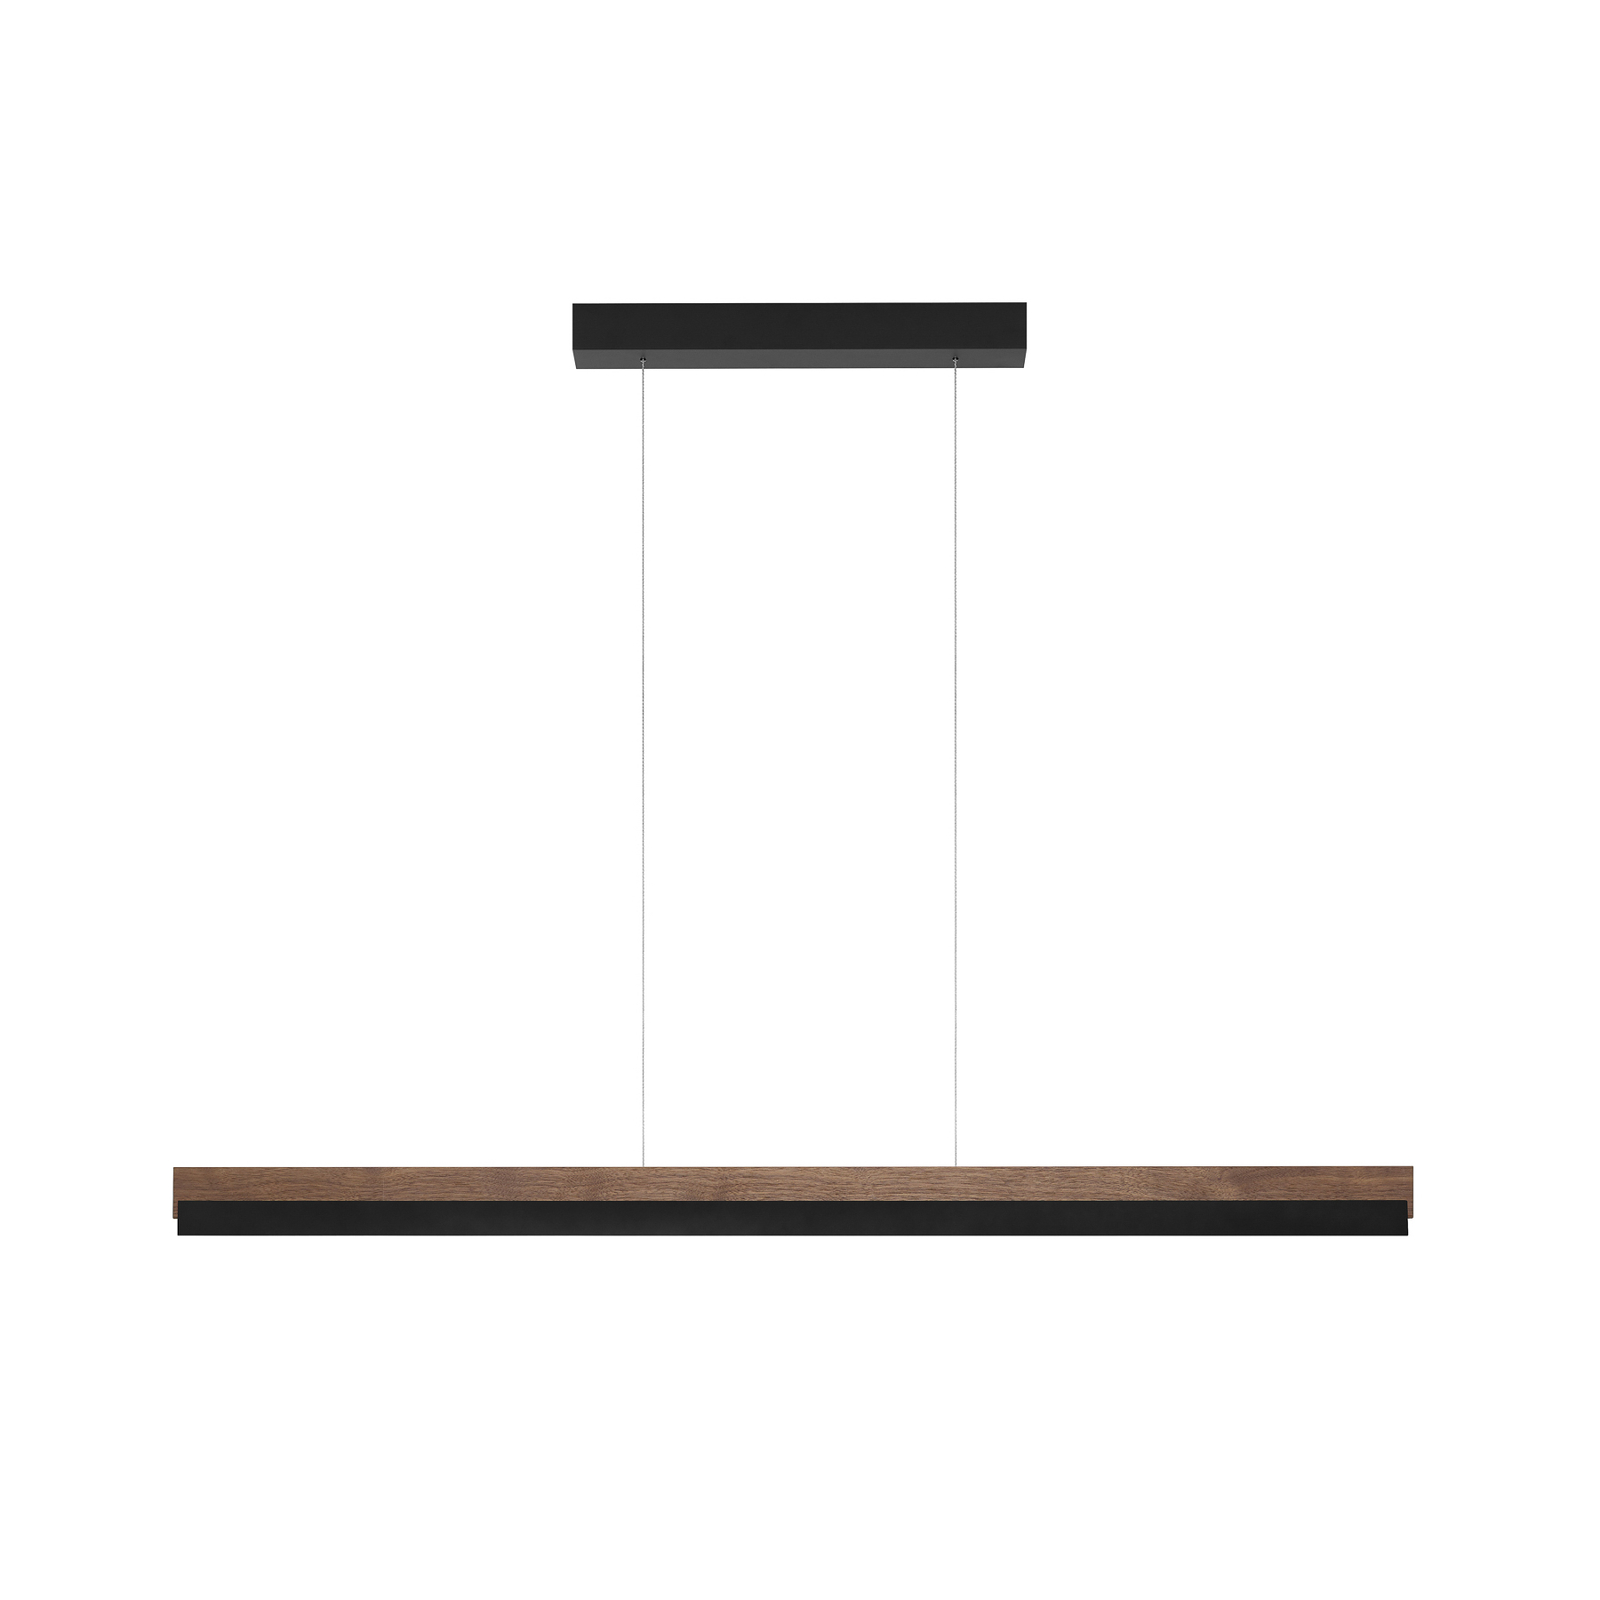 Quitani hanglamp Keijo, zwart/noot, 123 cm